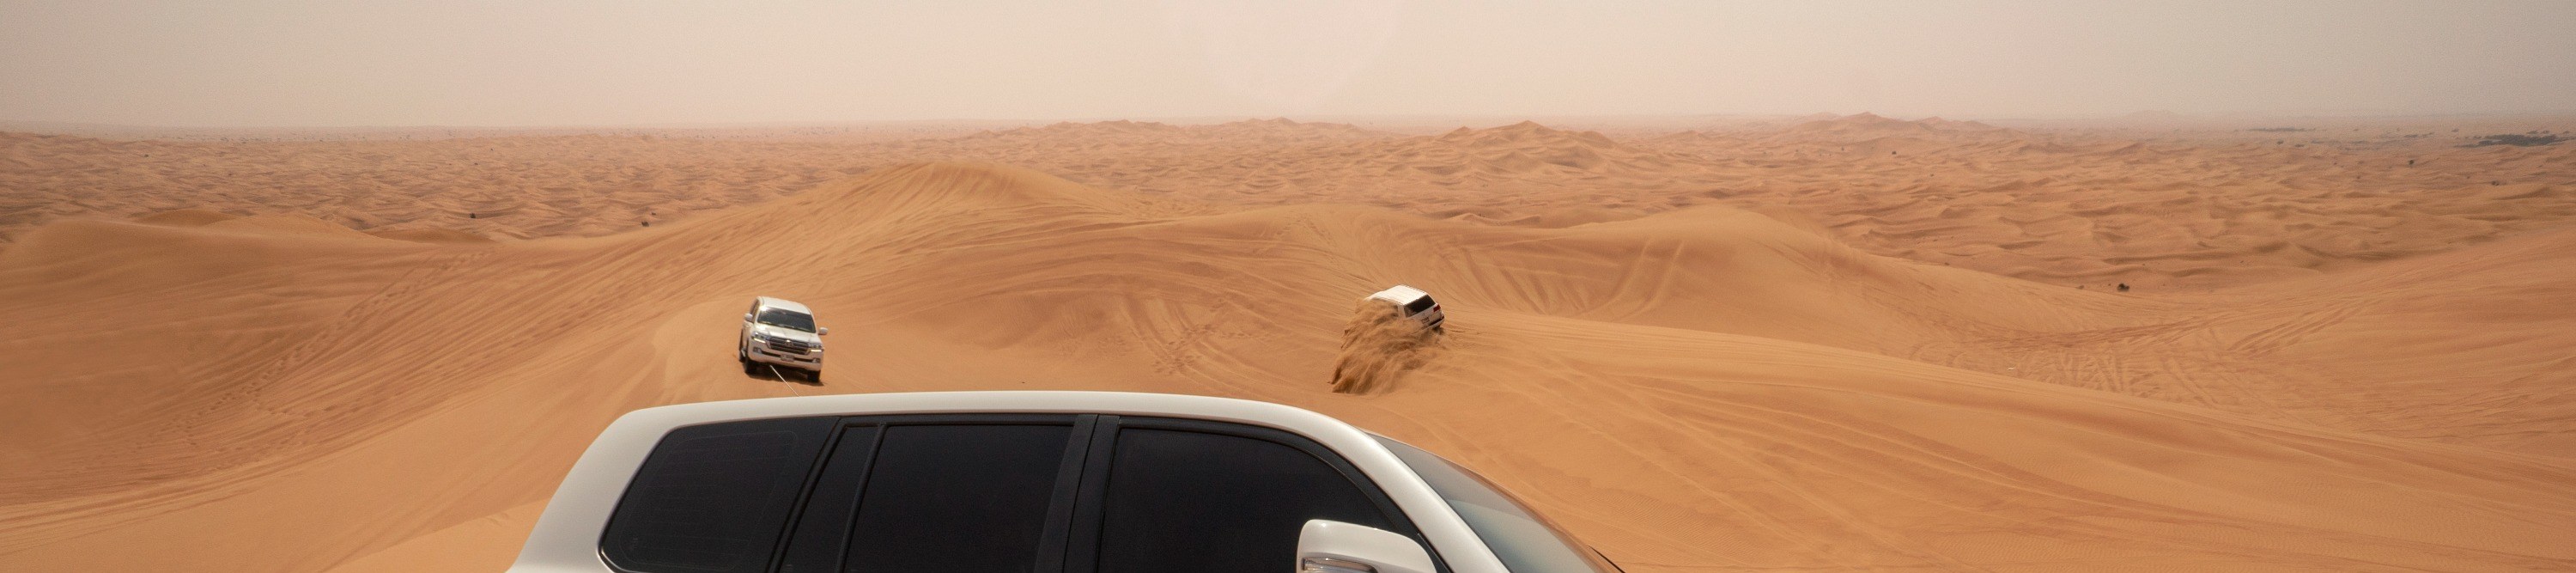 迪拜豪華沙漠探索體驗